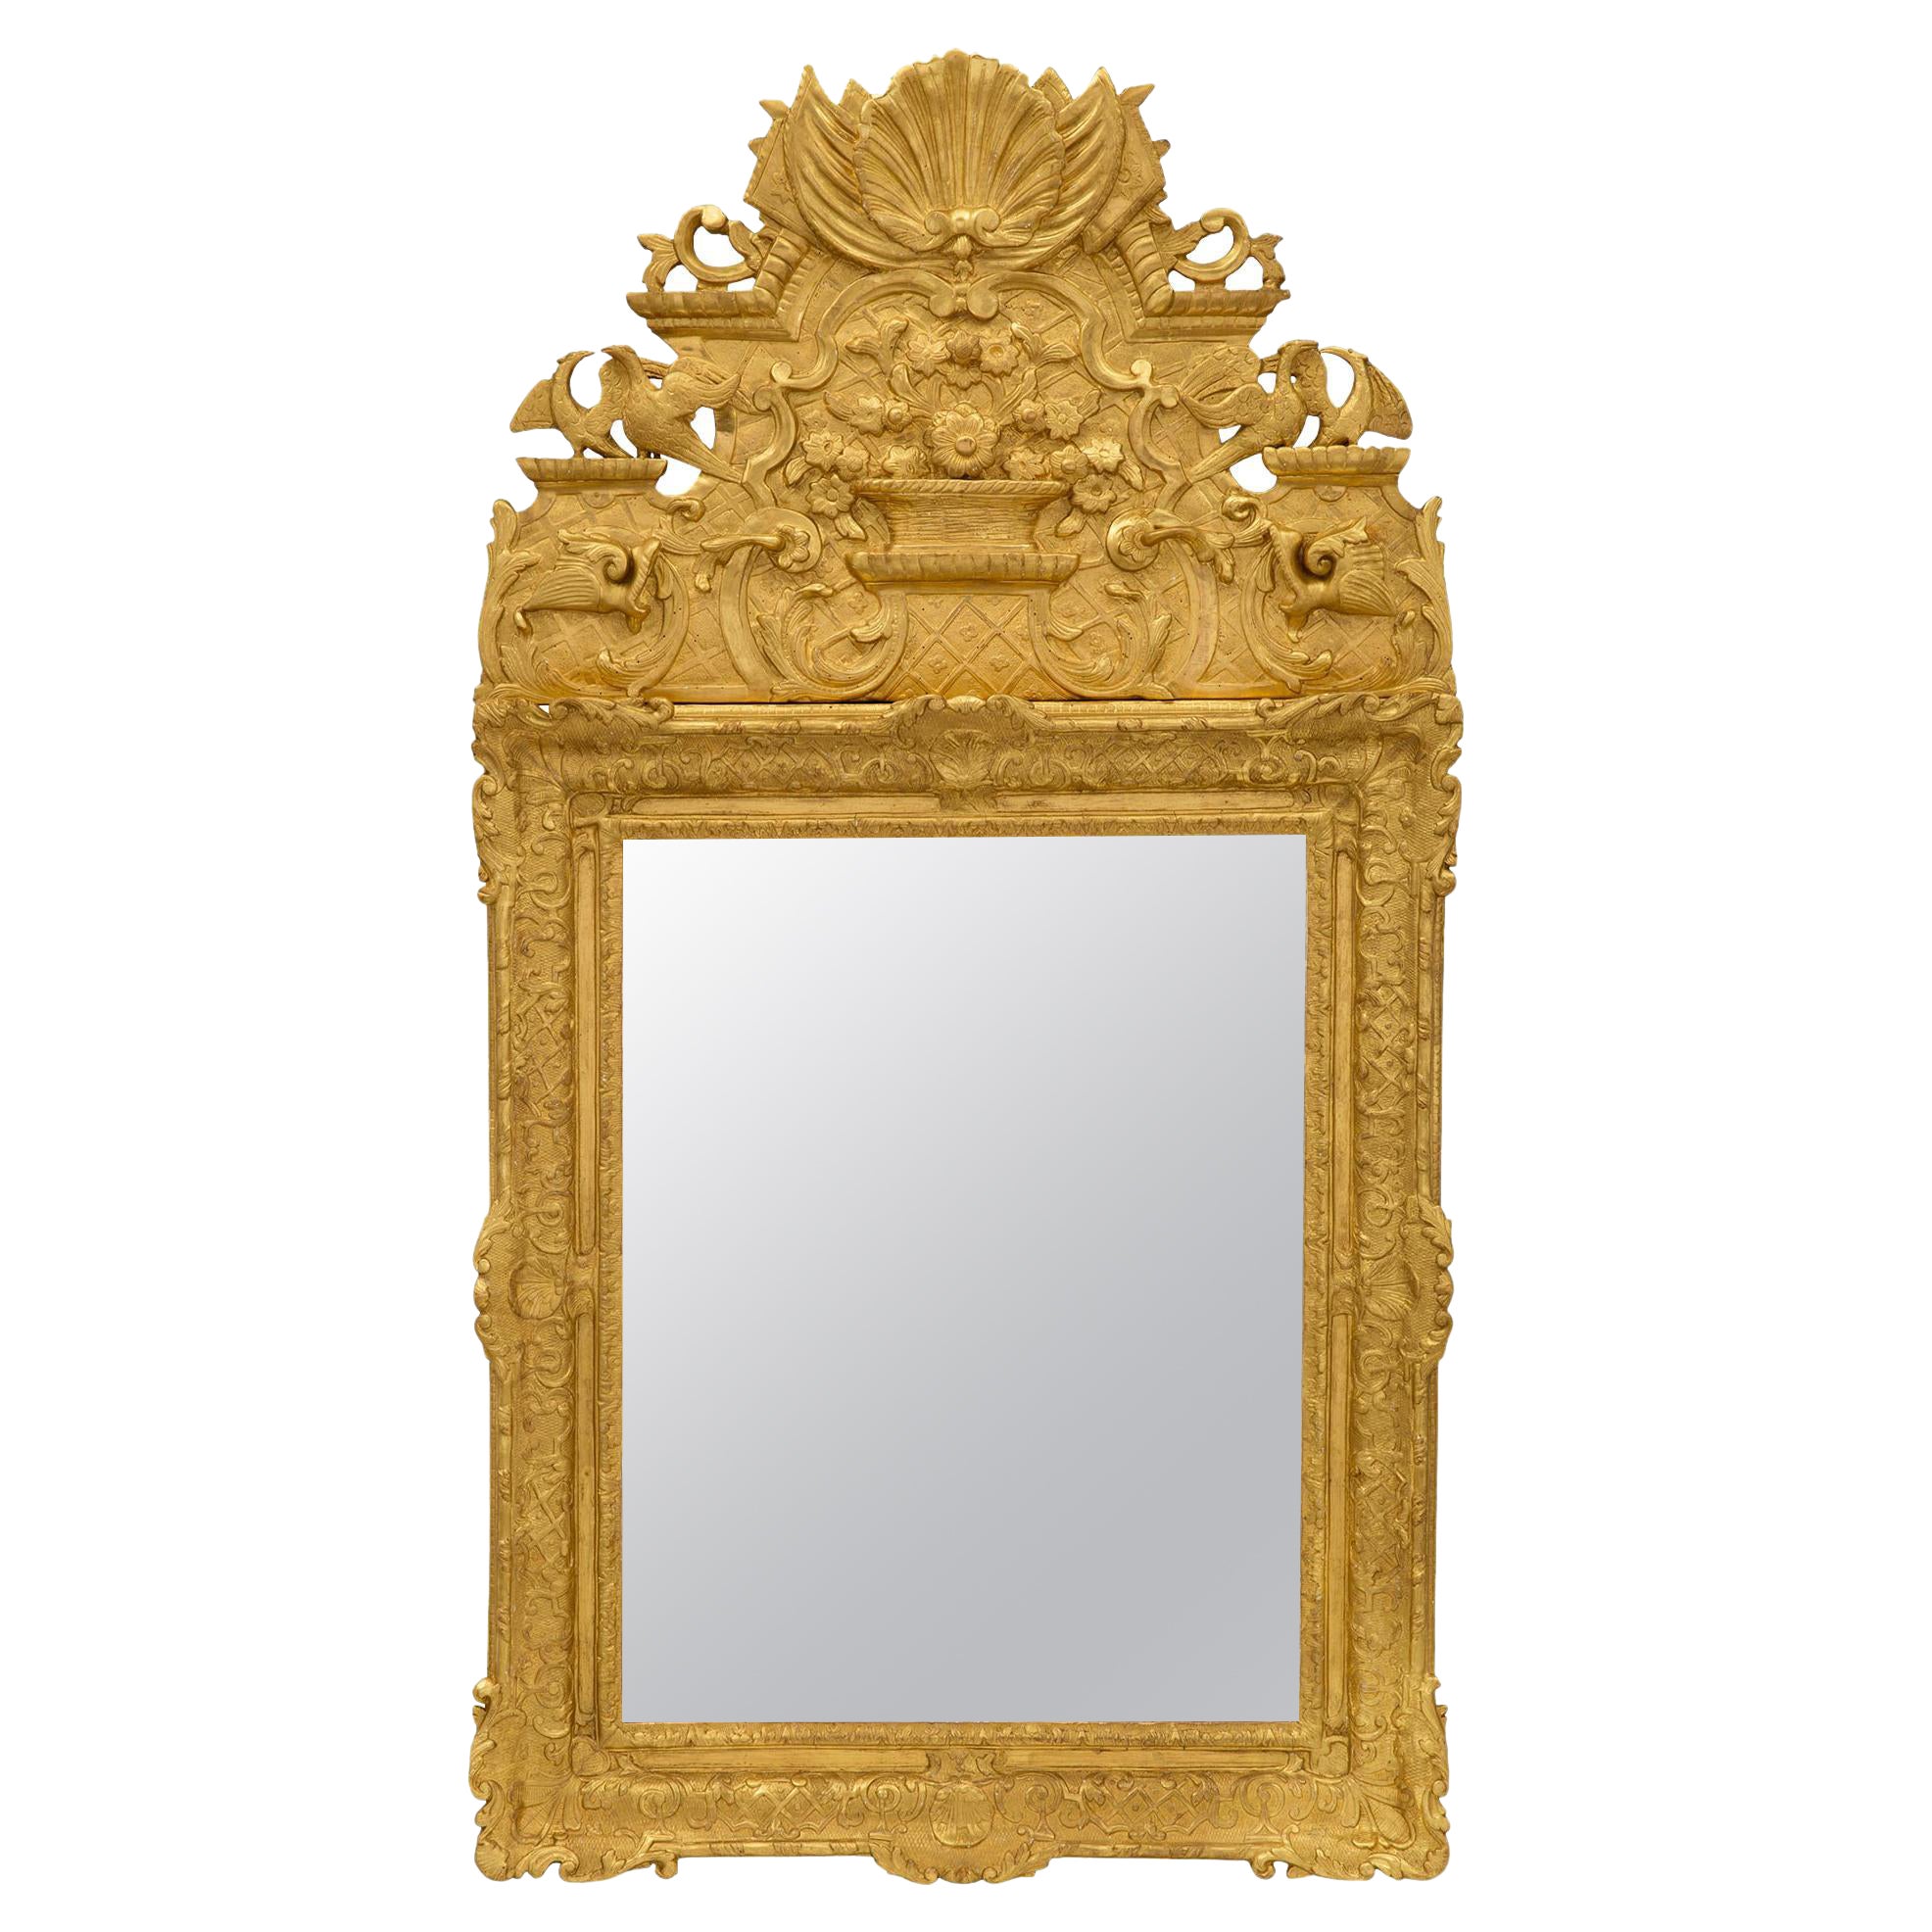 Miroir en bois doré français de la période Régence du XVIIIe siècle